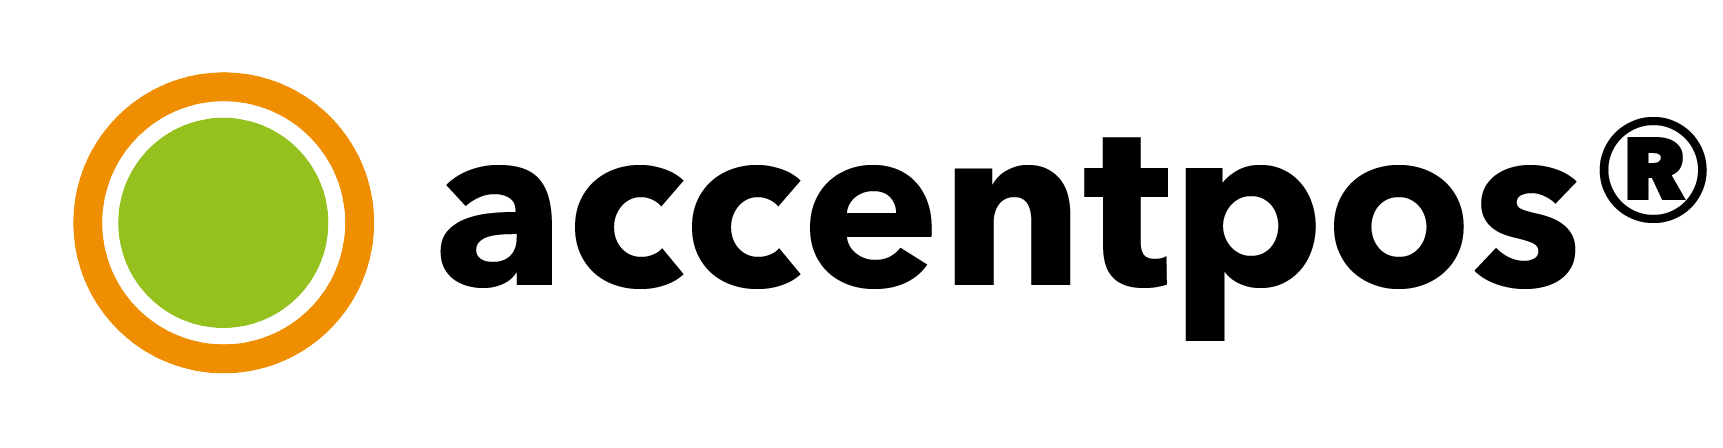 AccentPOS Logo